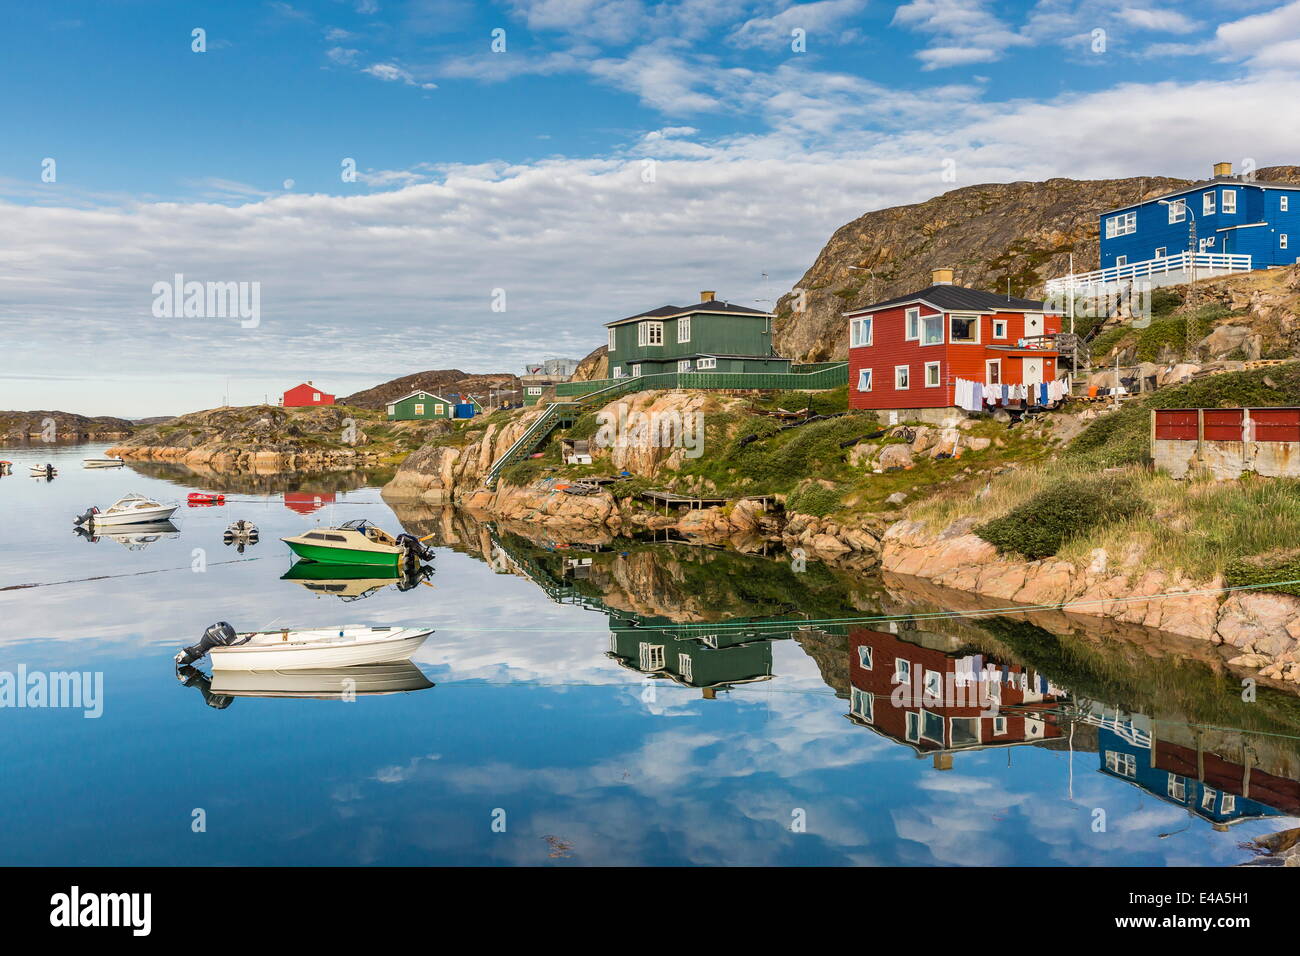 Calma le acque riflettono le case vivacemente colorate in Sisimiut, Groenlandia, regioni polari Foto Stock